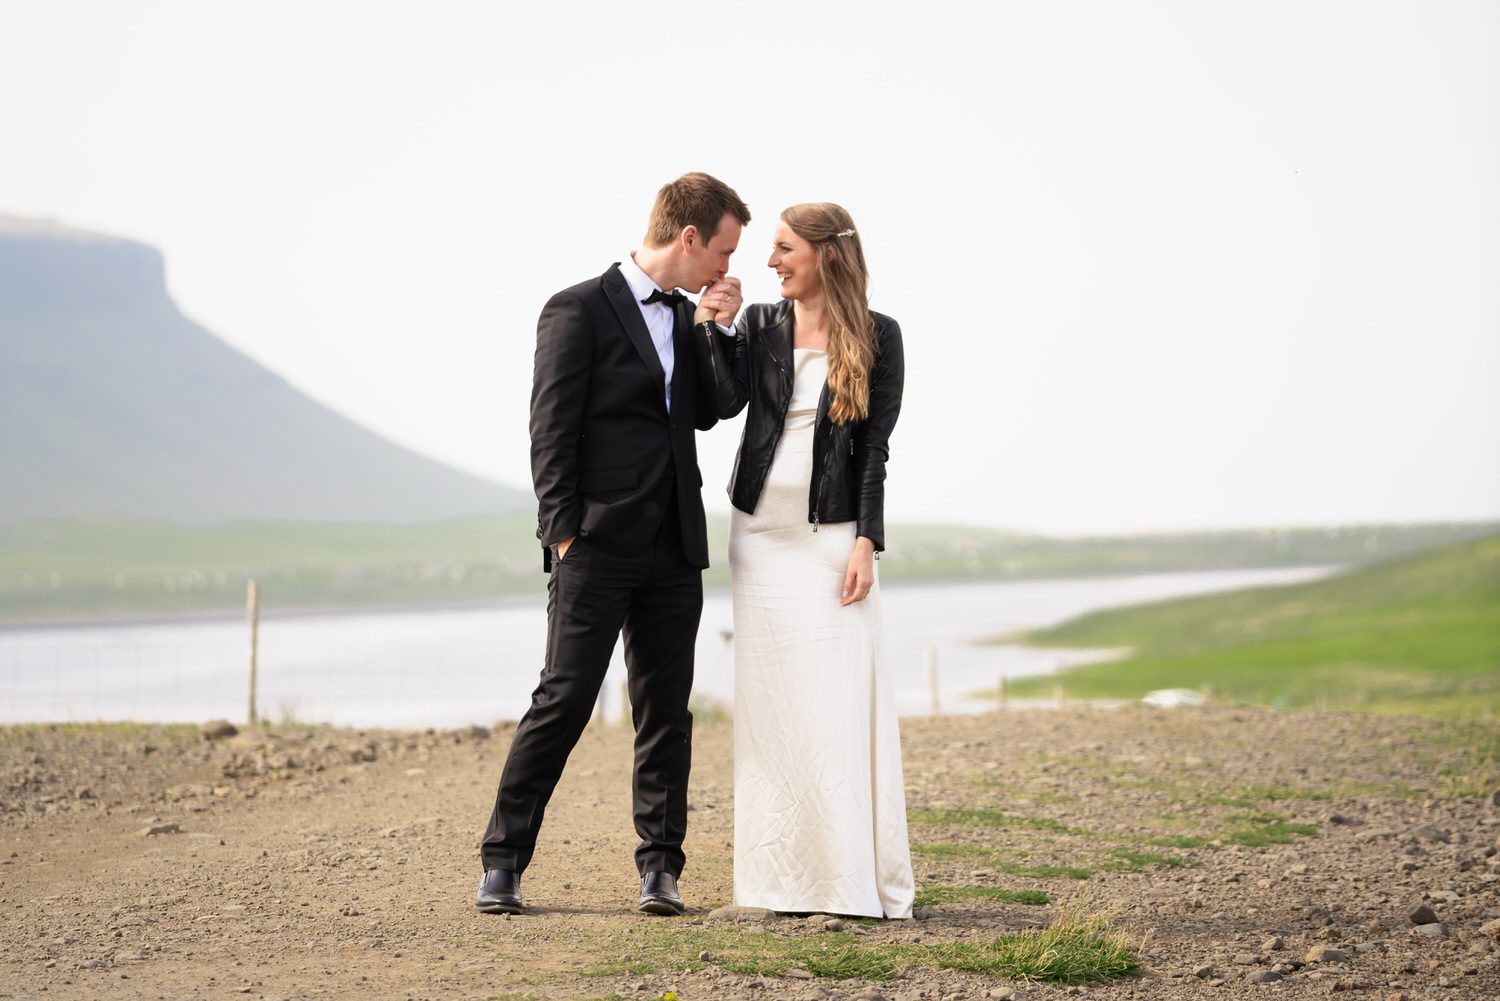 Iceland wedding photographer Nicole Chan